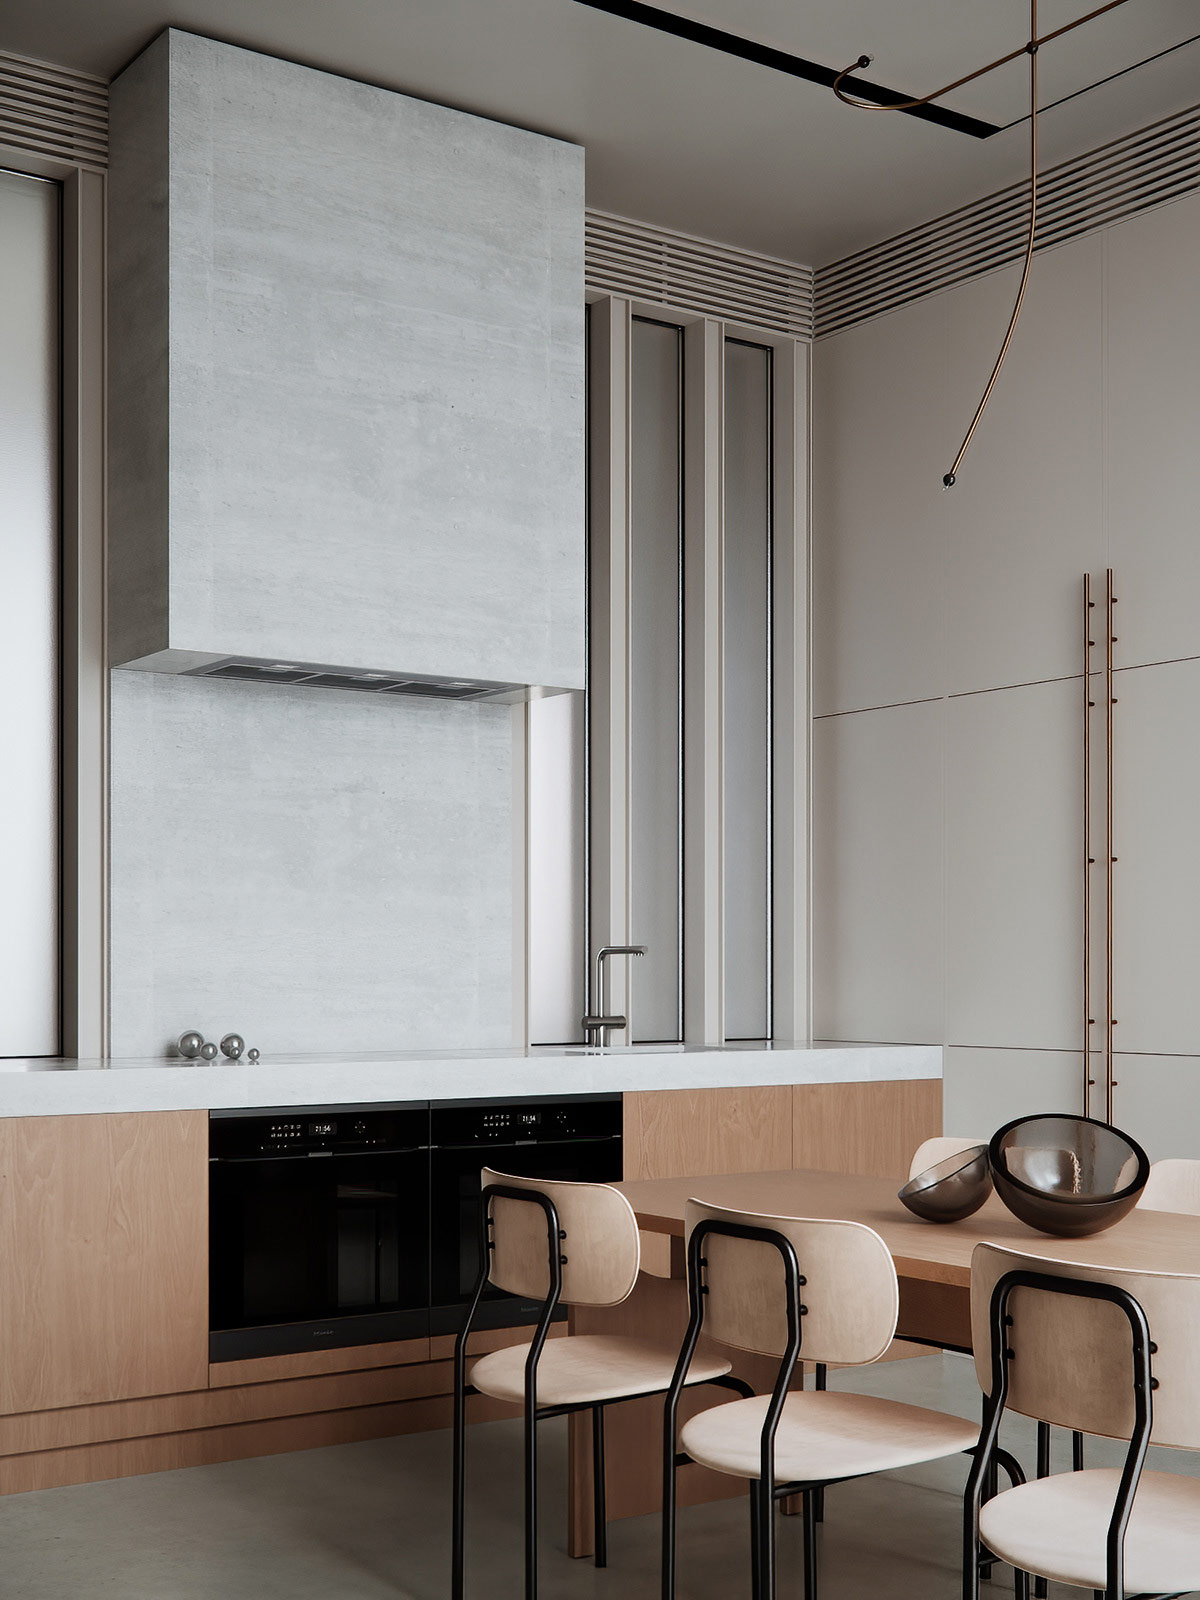 hình ảnh phòng bếp căn hộ phong cách tối giản với hệ tủ bếp âm tường, cạnh đó là bàn ăn hình chữ nhật, ghế ngồi màu be sáng